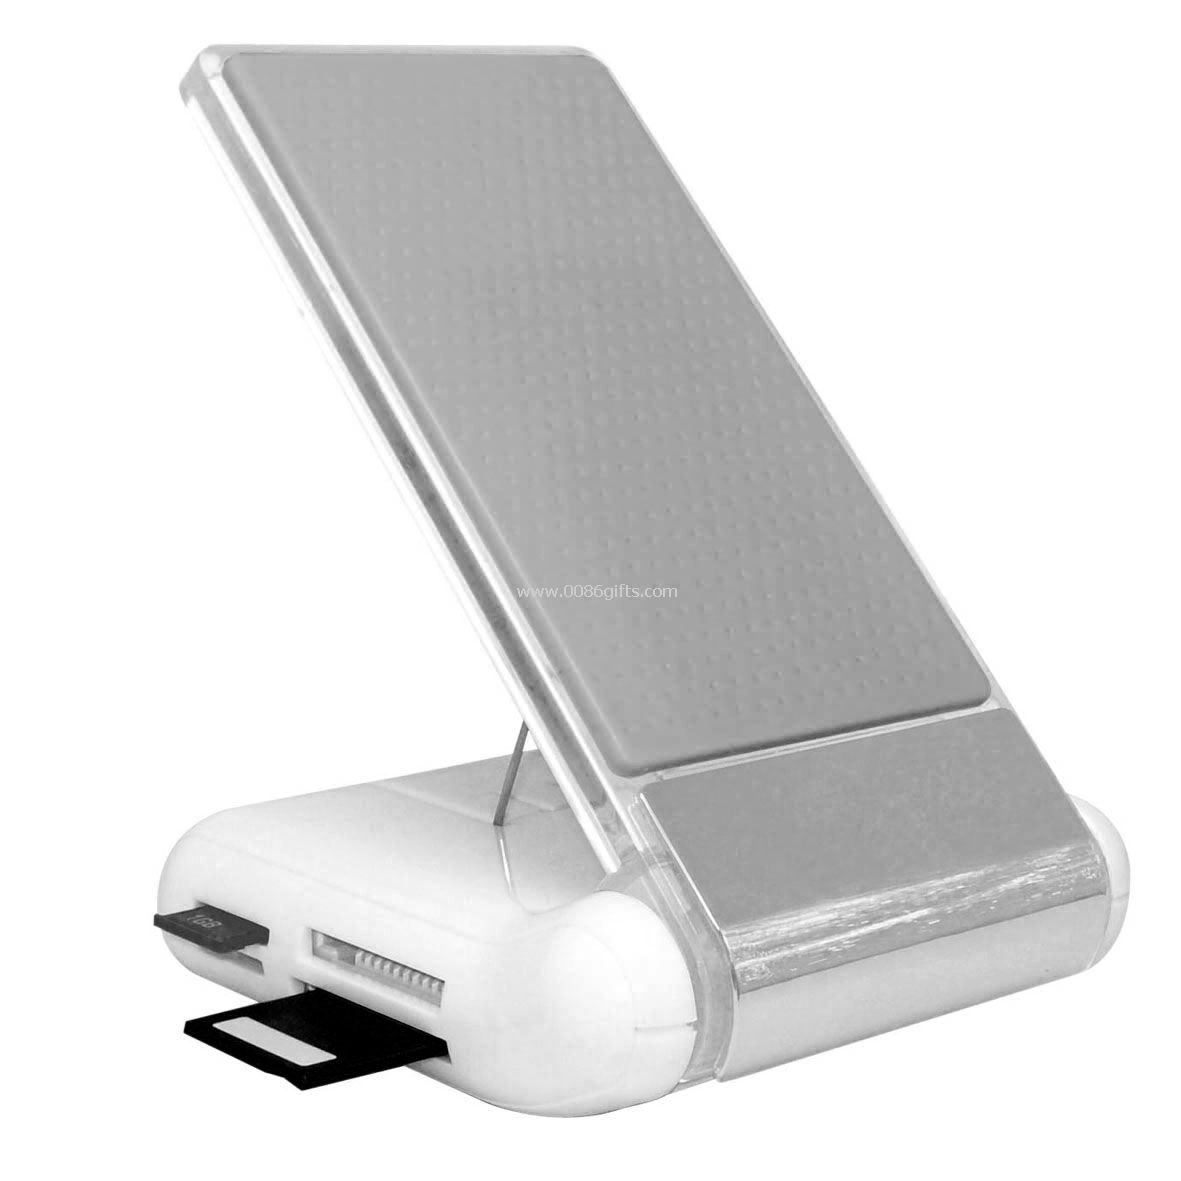 USB Hub Card Reader mobilholderen